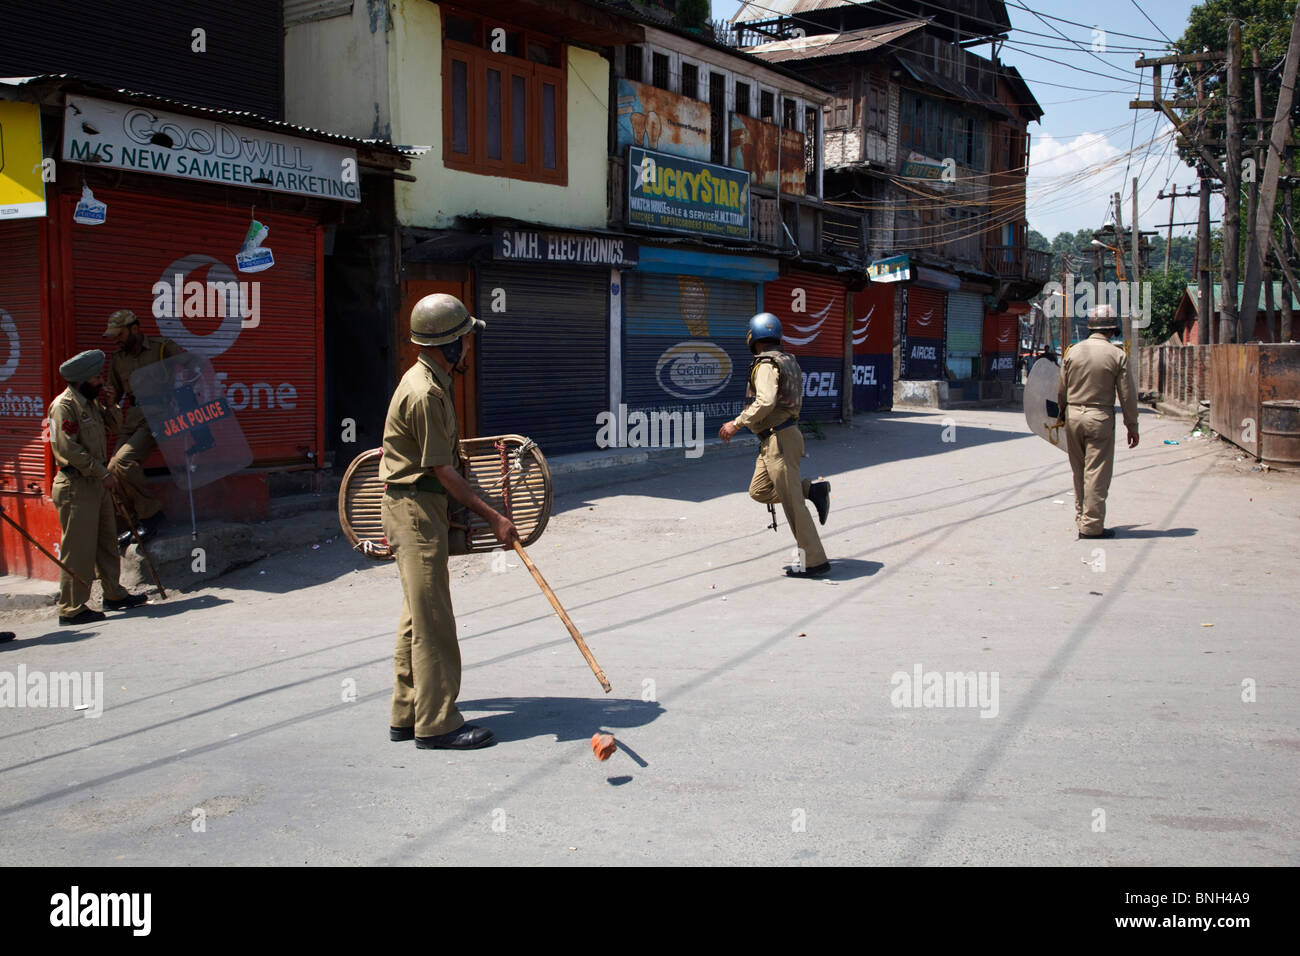 La policía peleas con adolescentes arrojando piedras contra ellos durante los disturbios en Srinagar, Jammu y Cachemira, en la India. Foto de stock